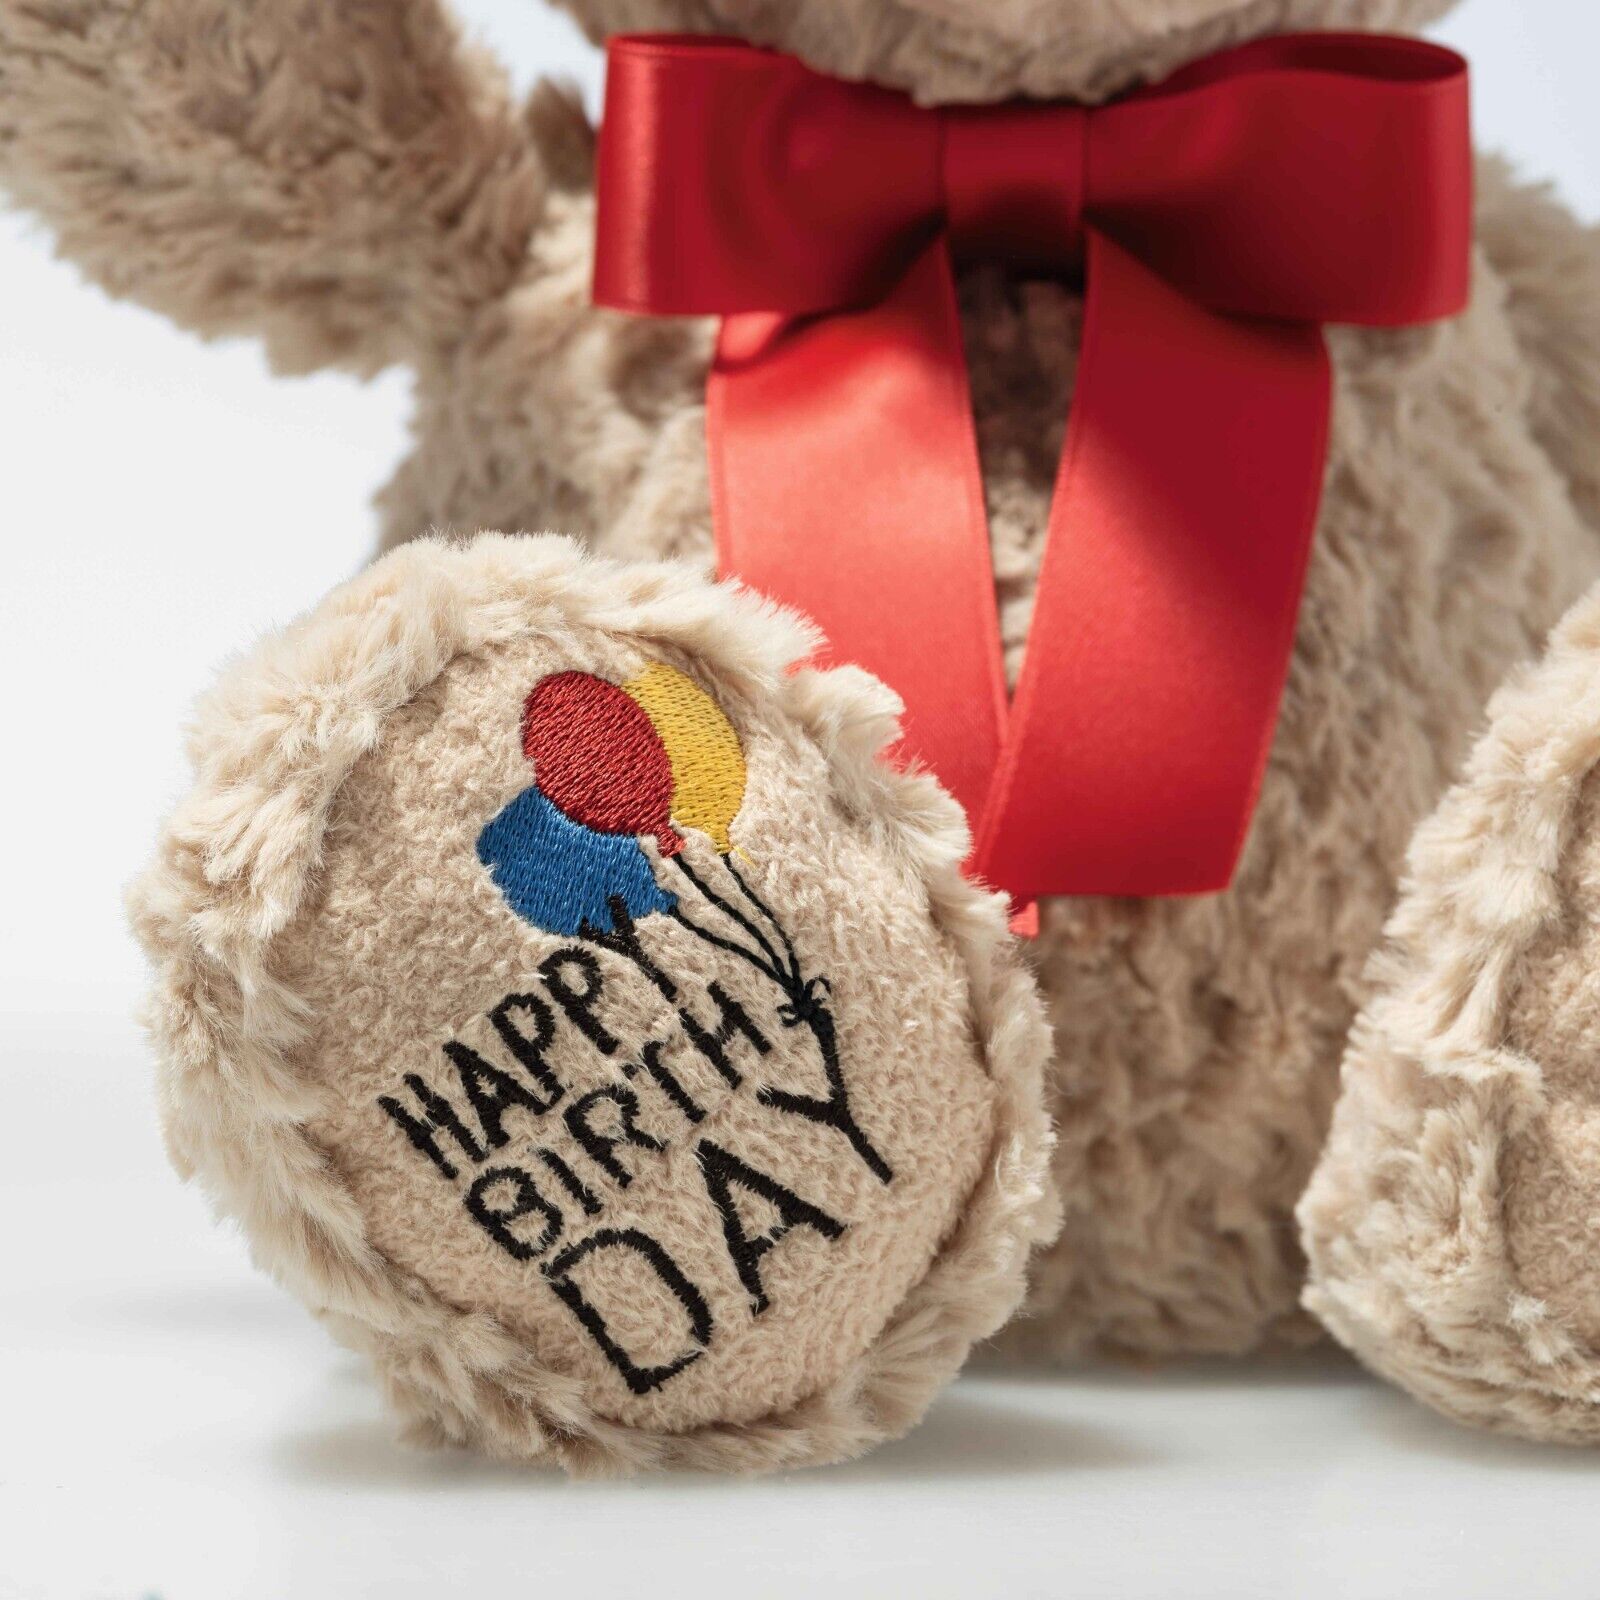 STEIFF Teddybär Jimmy 35 cm beige 'Happy Birthday' 114069 - für liebste Menschen 